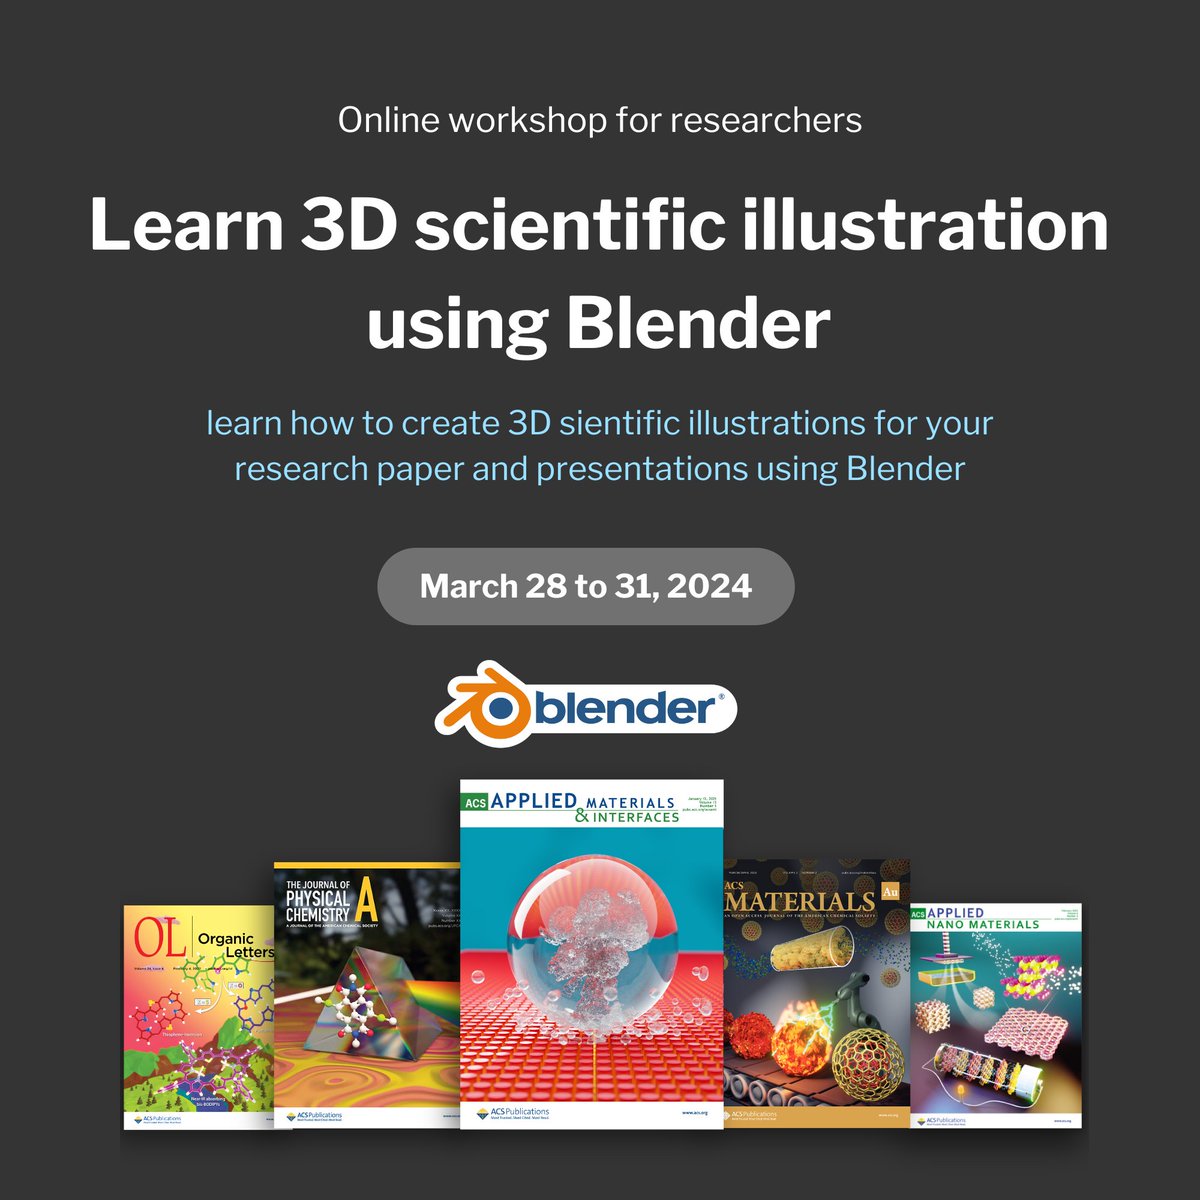 3D illustration workshop for researchers. Next batch starts next week. Register now at: blender.scidart.com